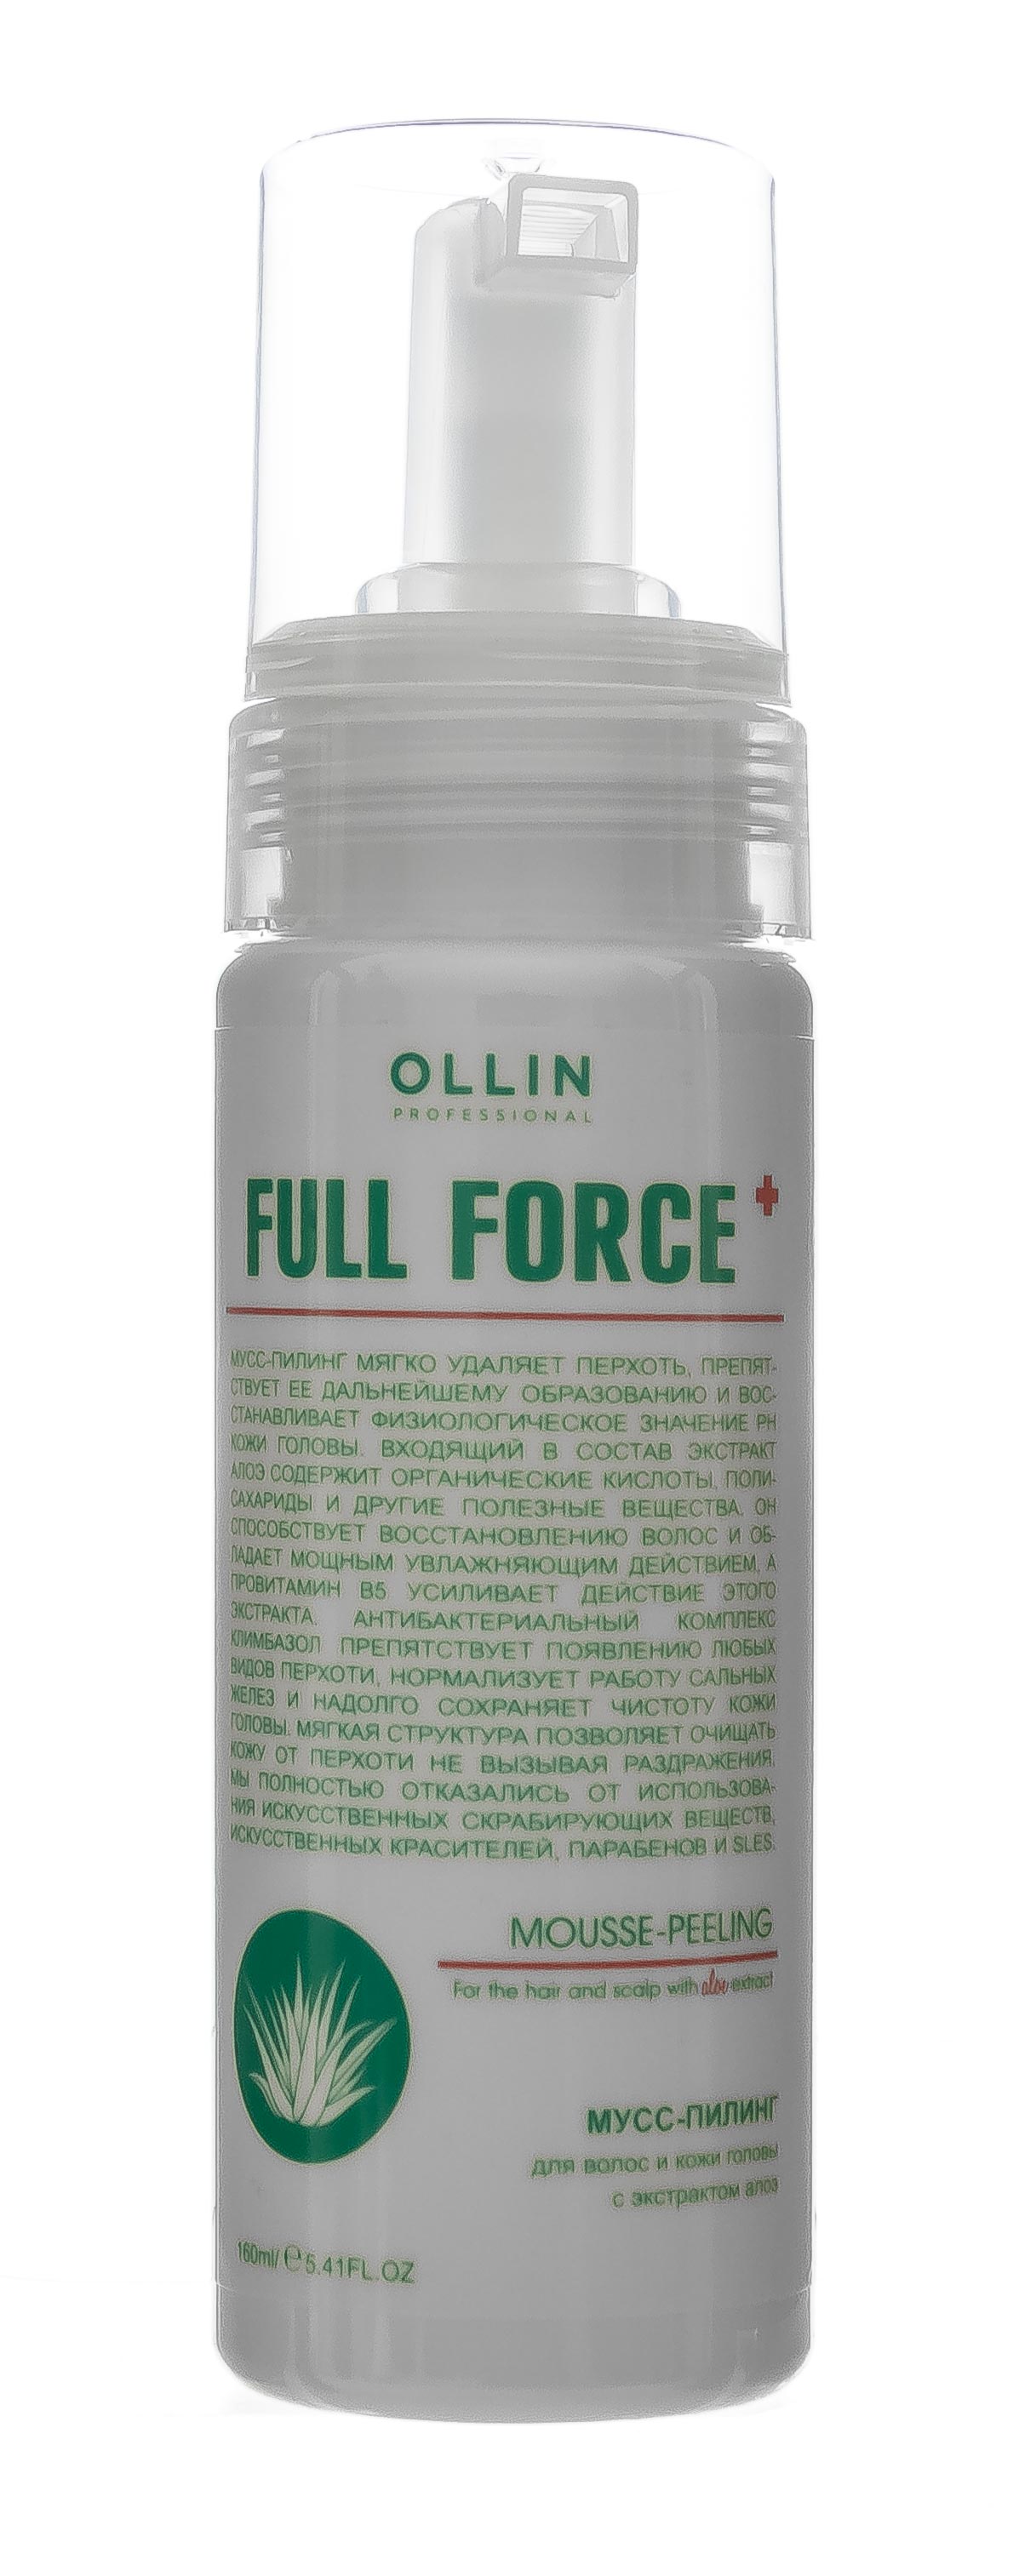 Ollin Professional Мусс-пилинг для волос и кожи головы с экстрактом алоэ, 160 мл (Ollin Professional, Уход за волосами)